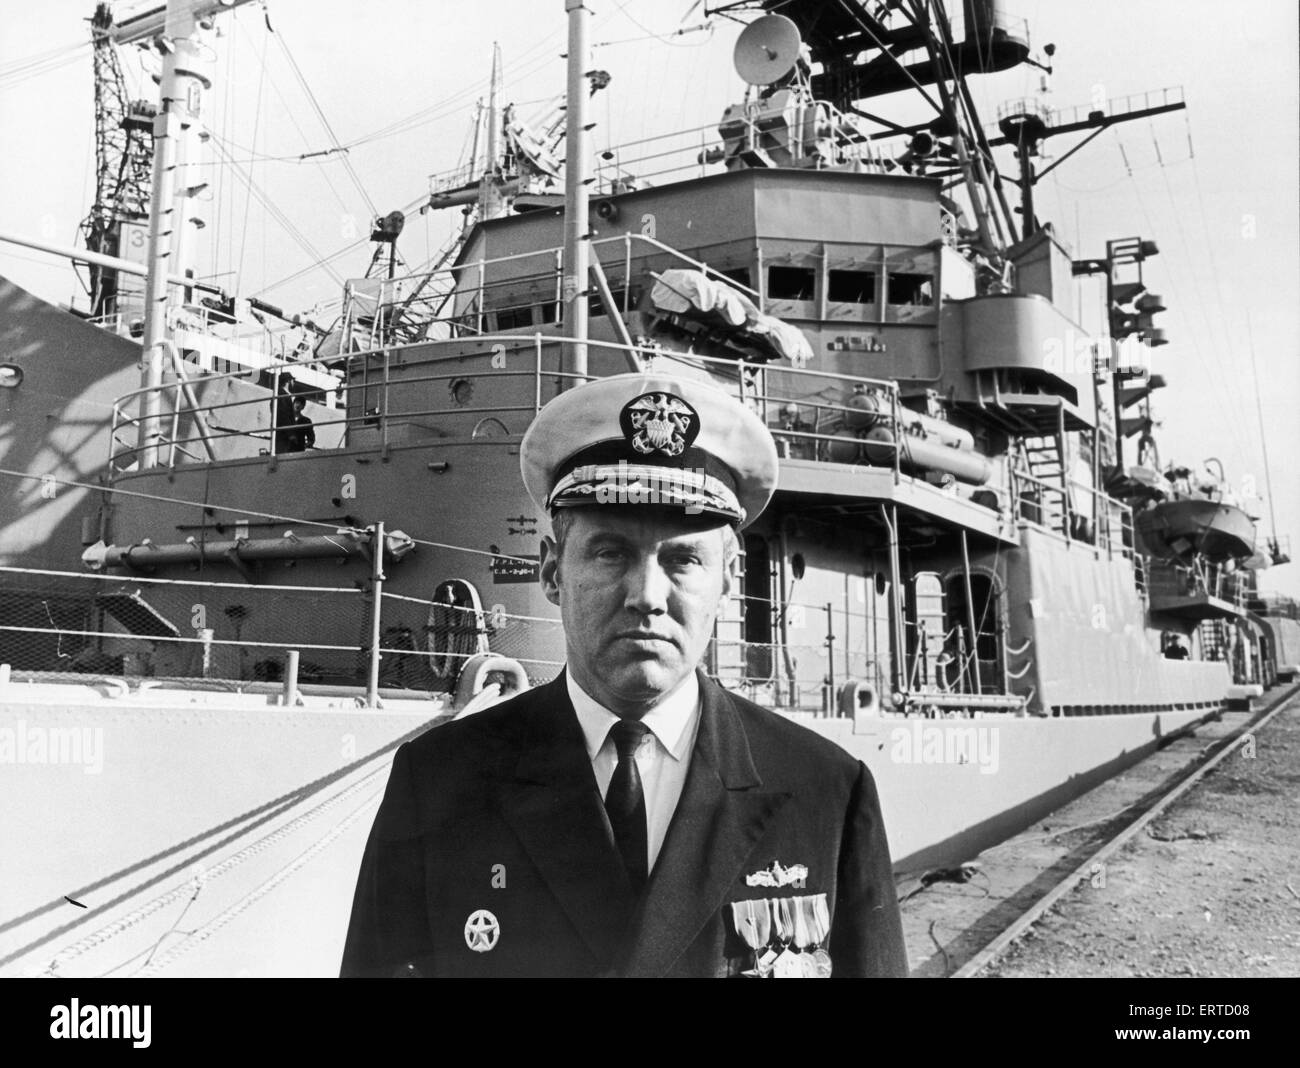 El Comandante Lloyd H Adams, capitán de la nave USS Barry Sherman destructor de clase que está de visita en Middlesbrough como parte del Festival del Capitán James Cook. 23 de octubre de 1978 Foto de stock